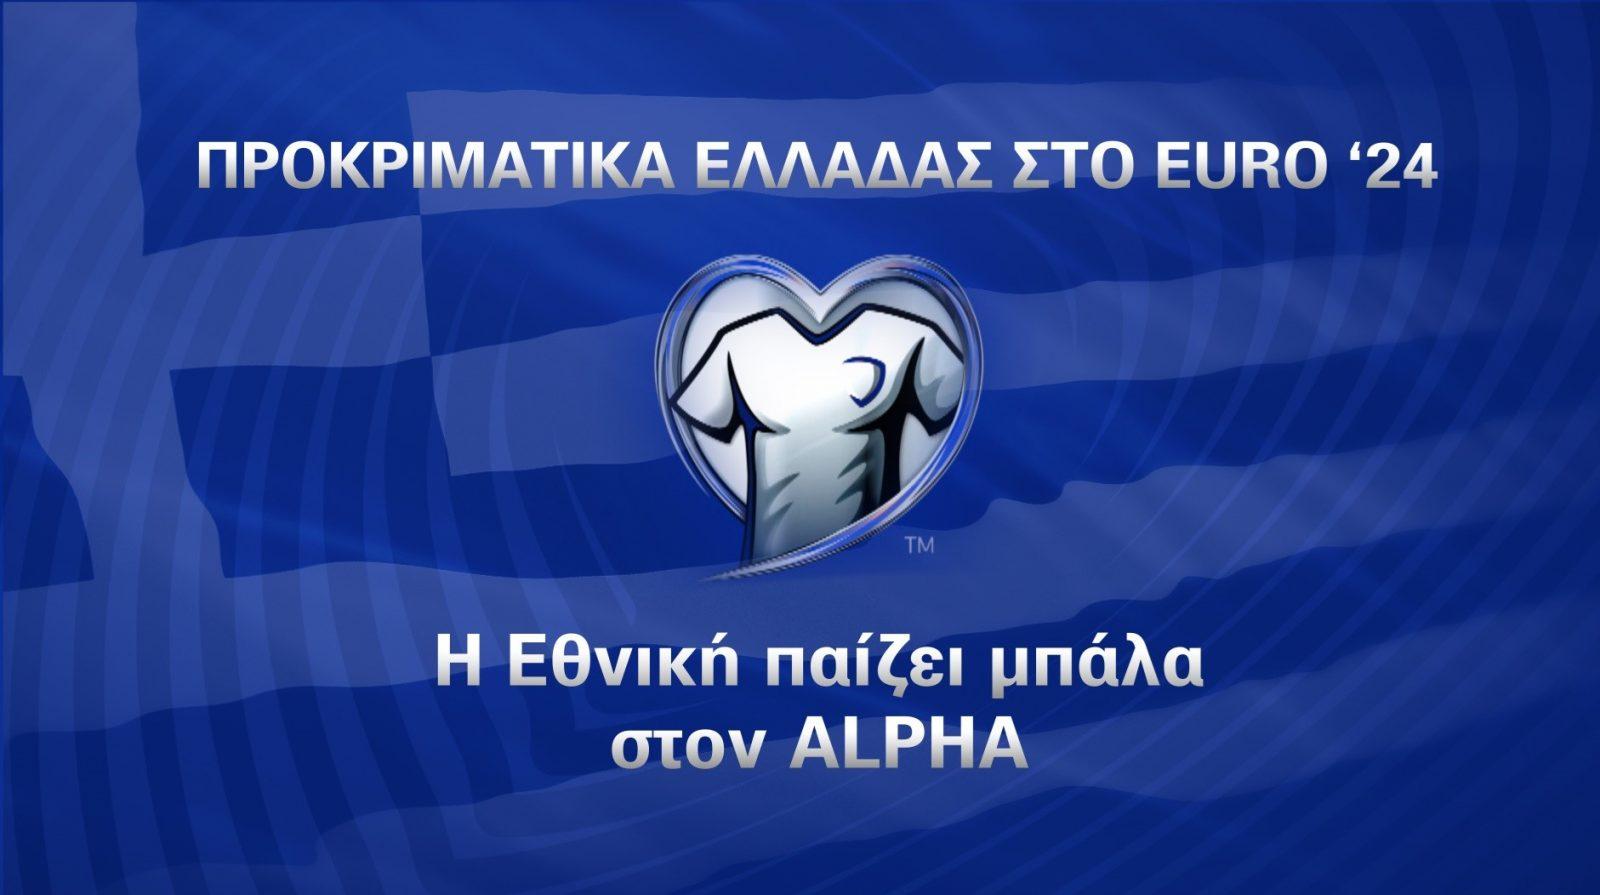 Η Εθνική παίζει μπάλα στον Alpha! Πάμε Ελλάδα!